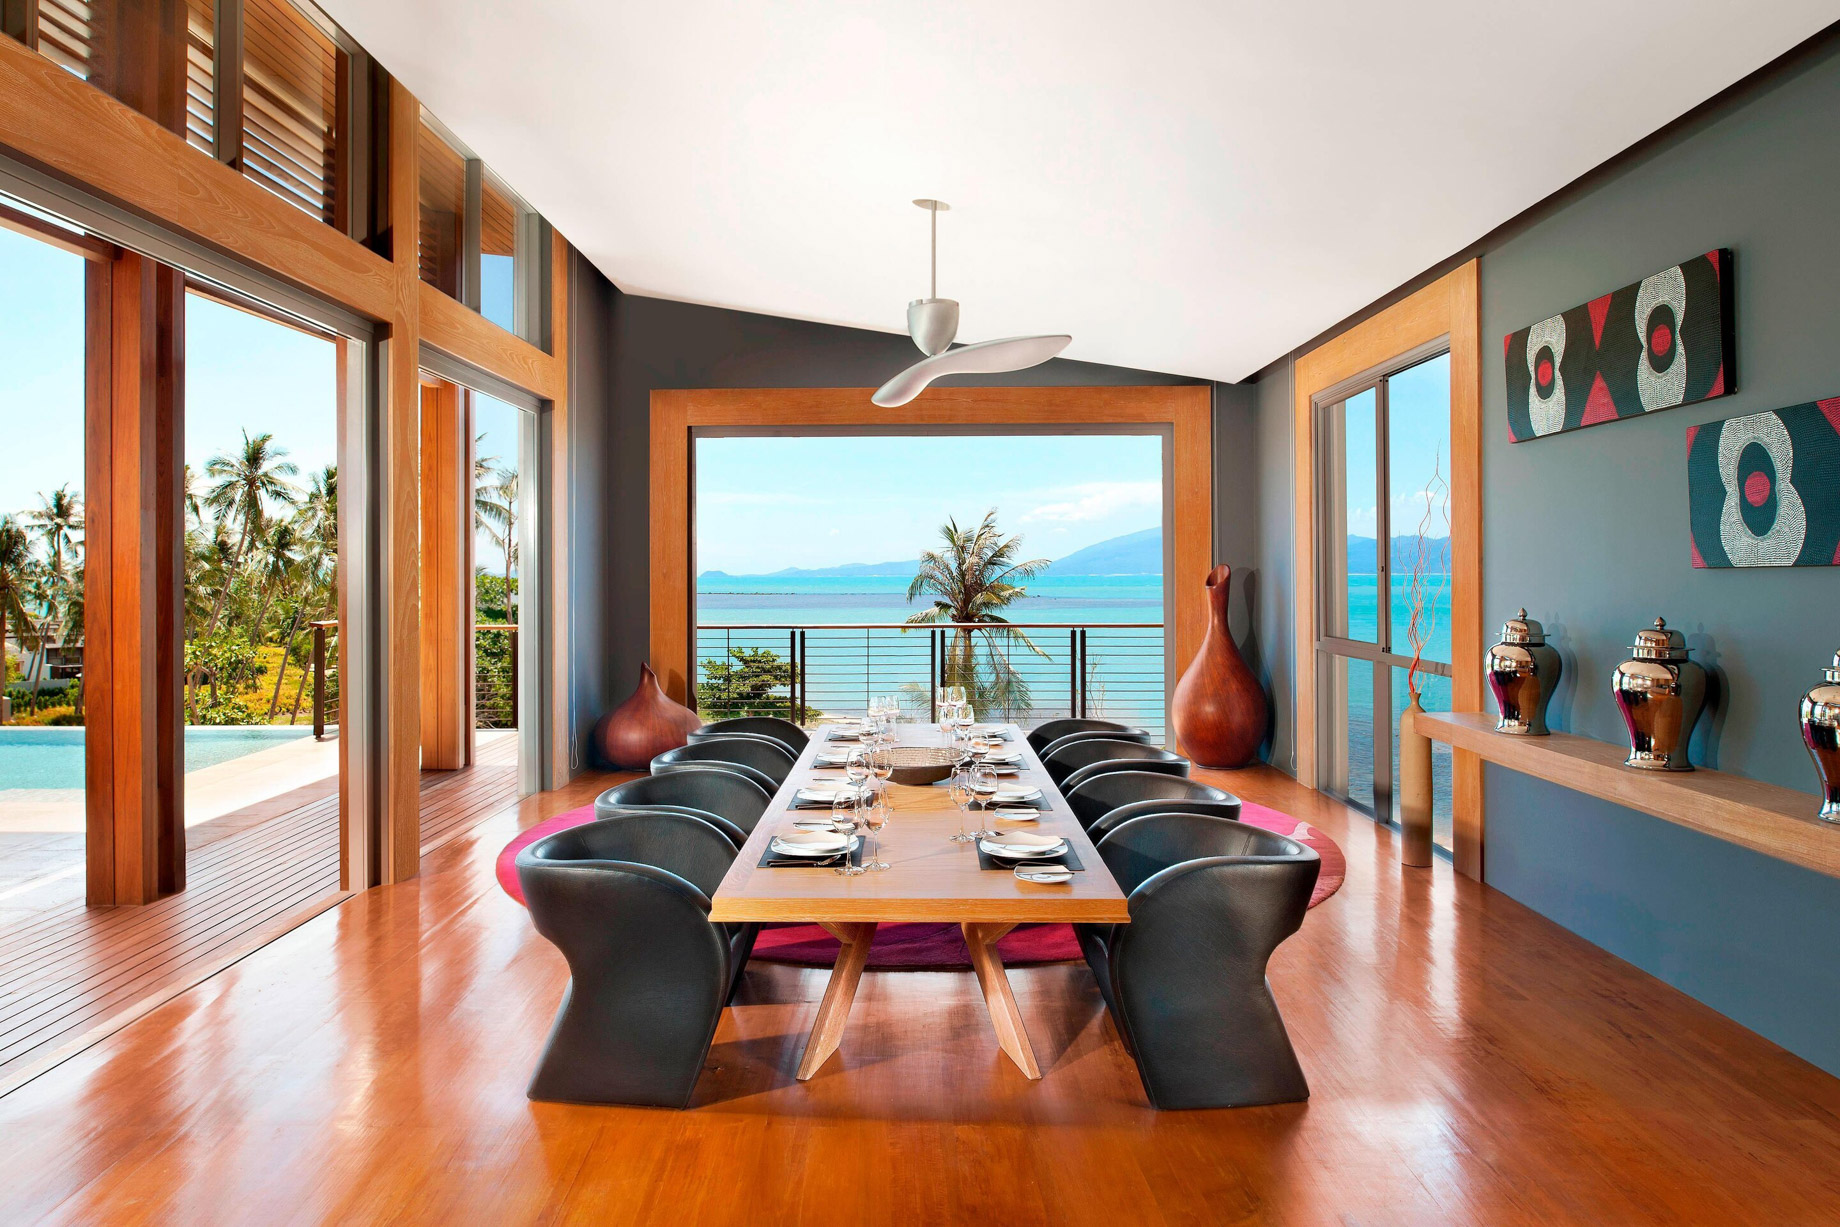 W Koh Samui Resort – Thailand – Residence Villa Ocean View Dining Room